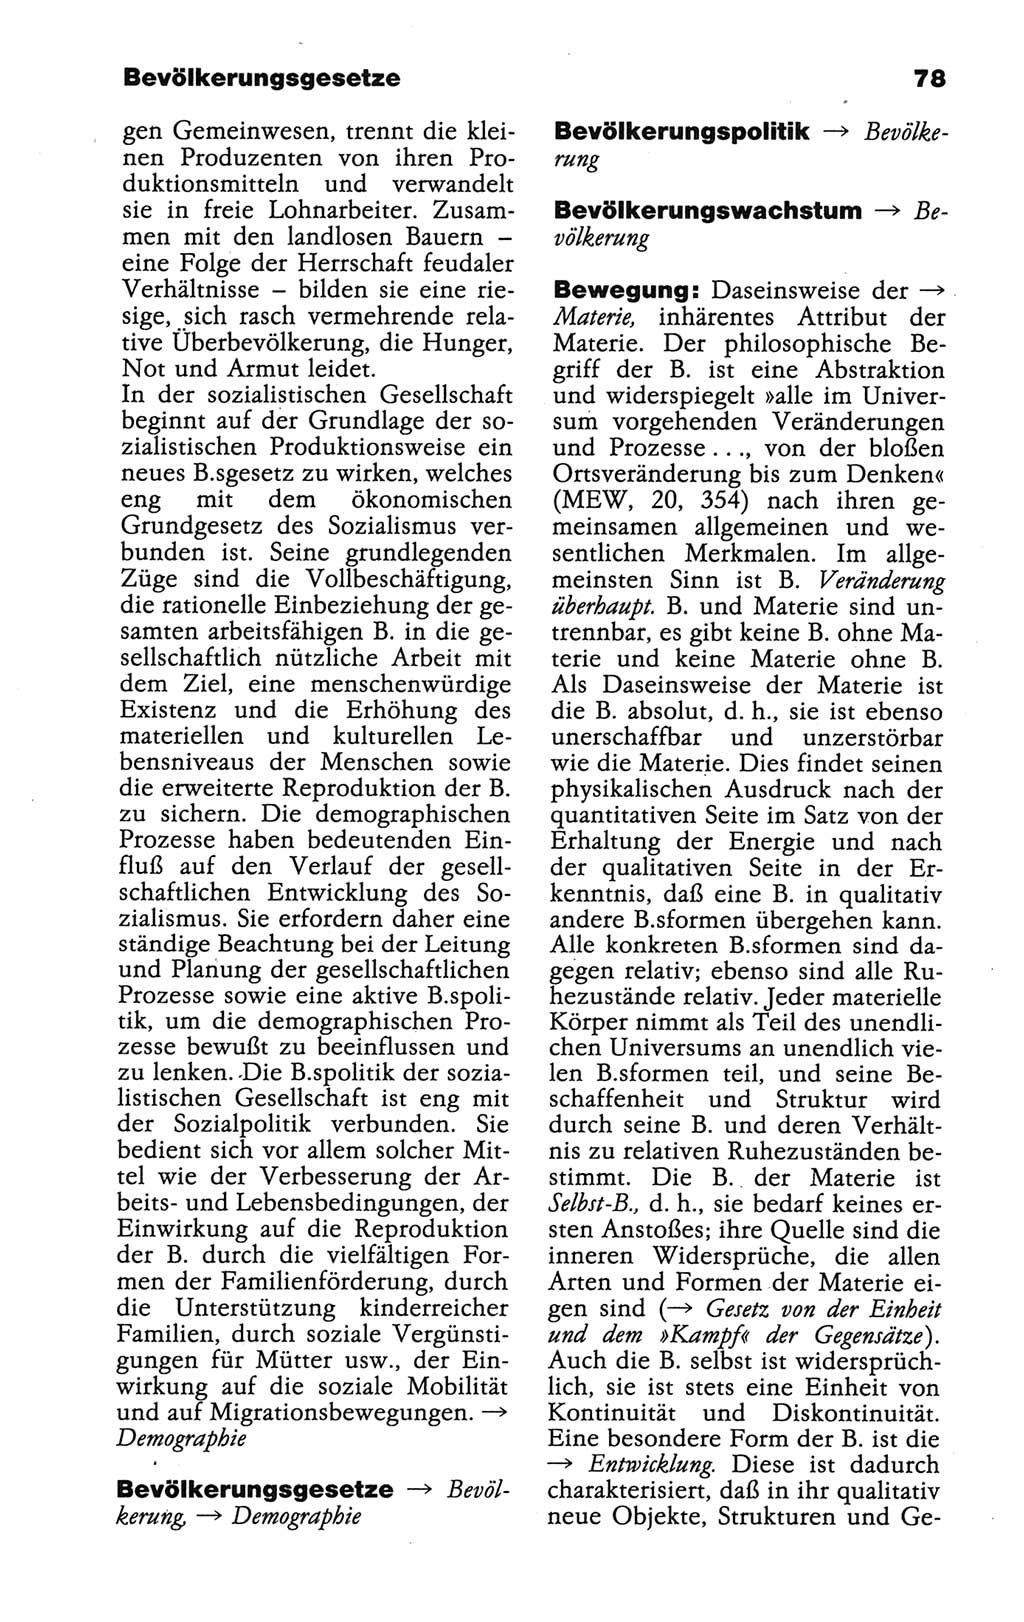 Wörterbuch der marxistisch-leninistischen Philosophie [Deutsche Demokratische Republik (DDR)] 1986, Seite 78 (Wb. ML Phil. DDR 1986, S. 78)